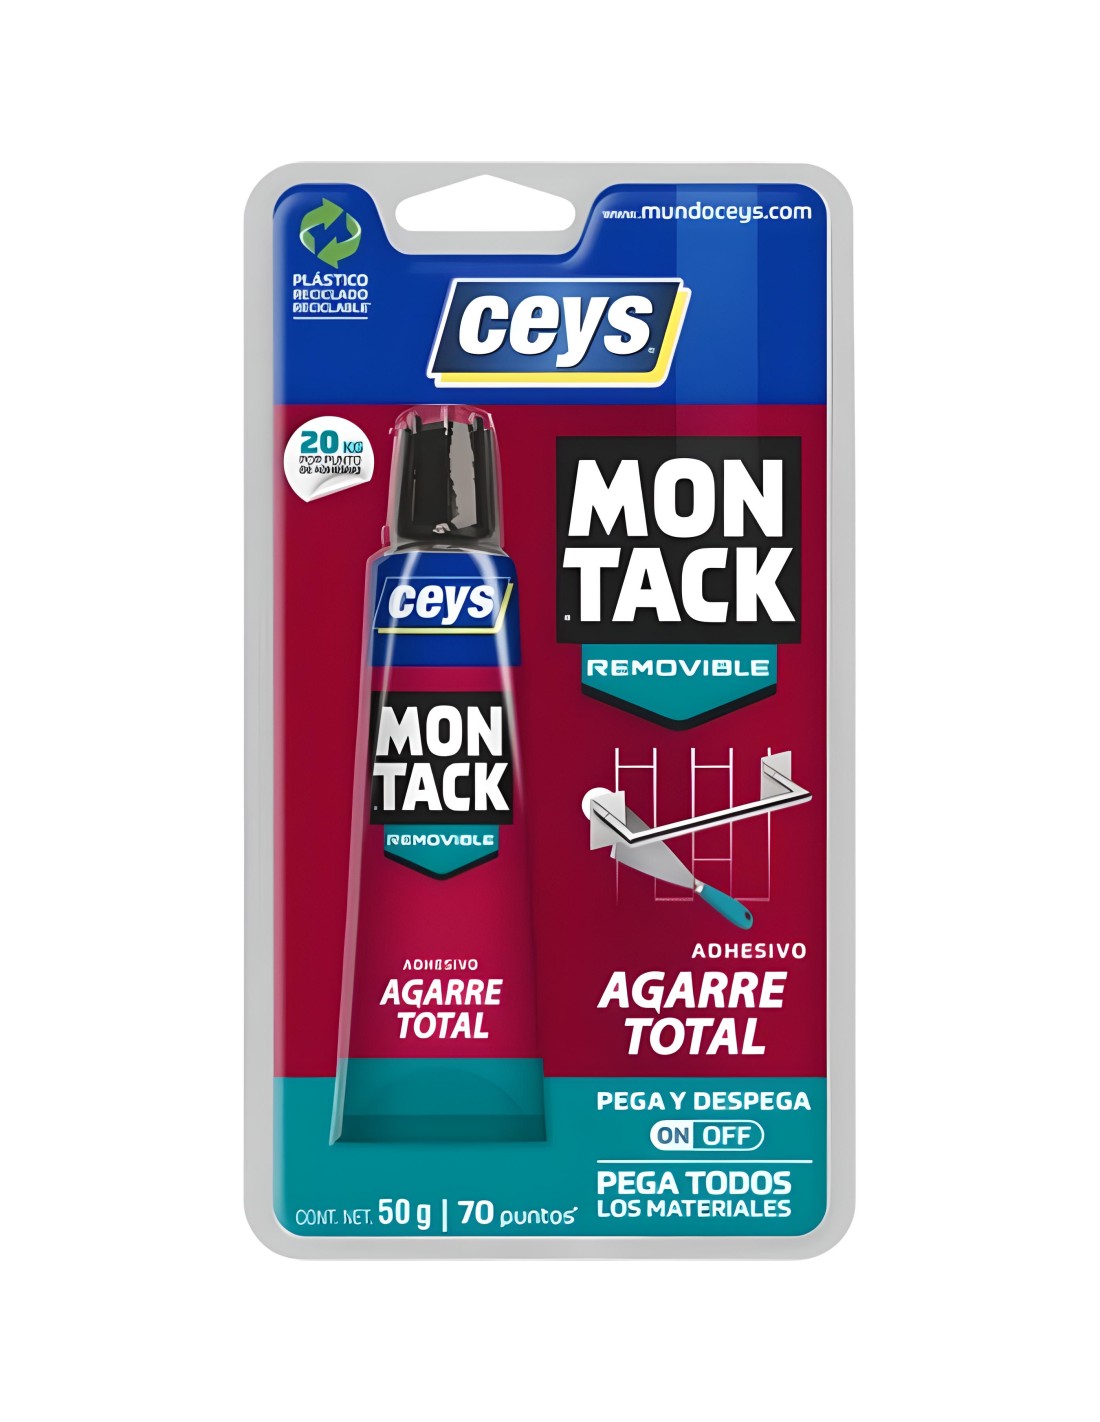 Montack High Tack: un adhesivo exprés para todos los materiales